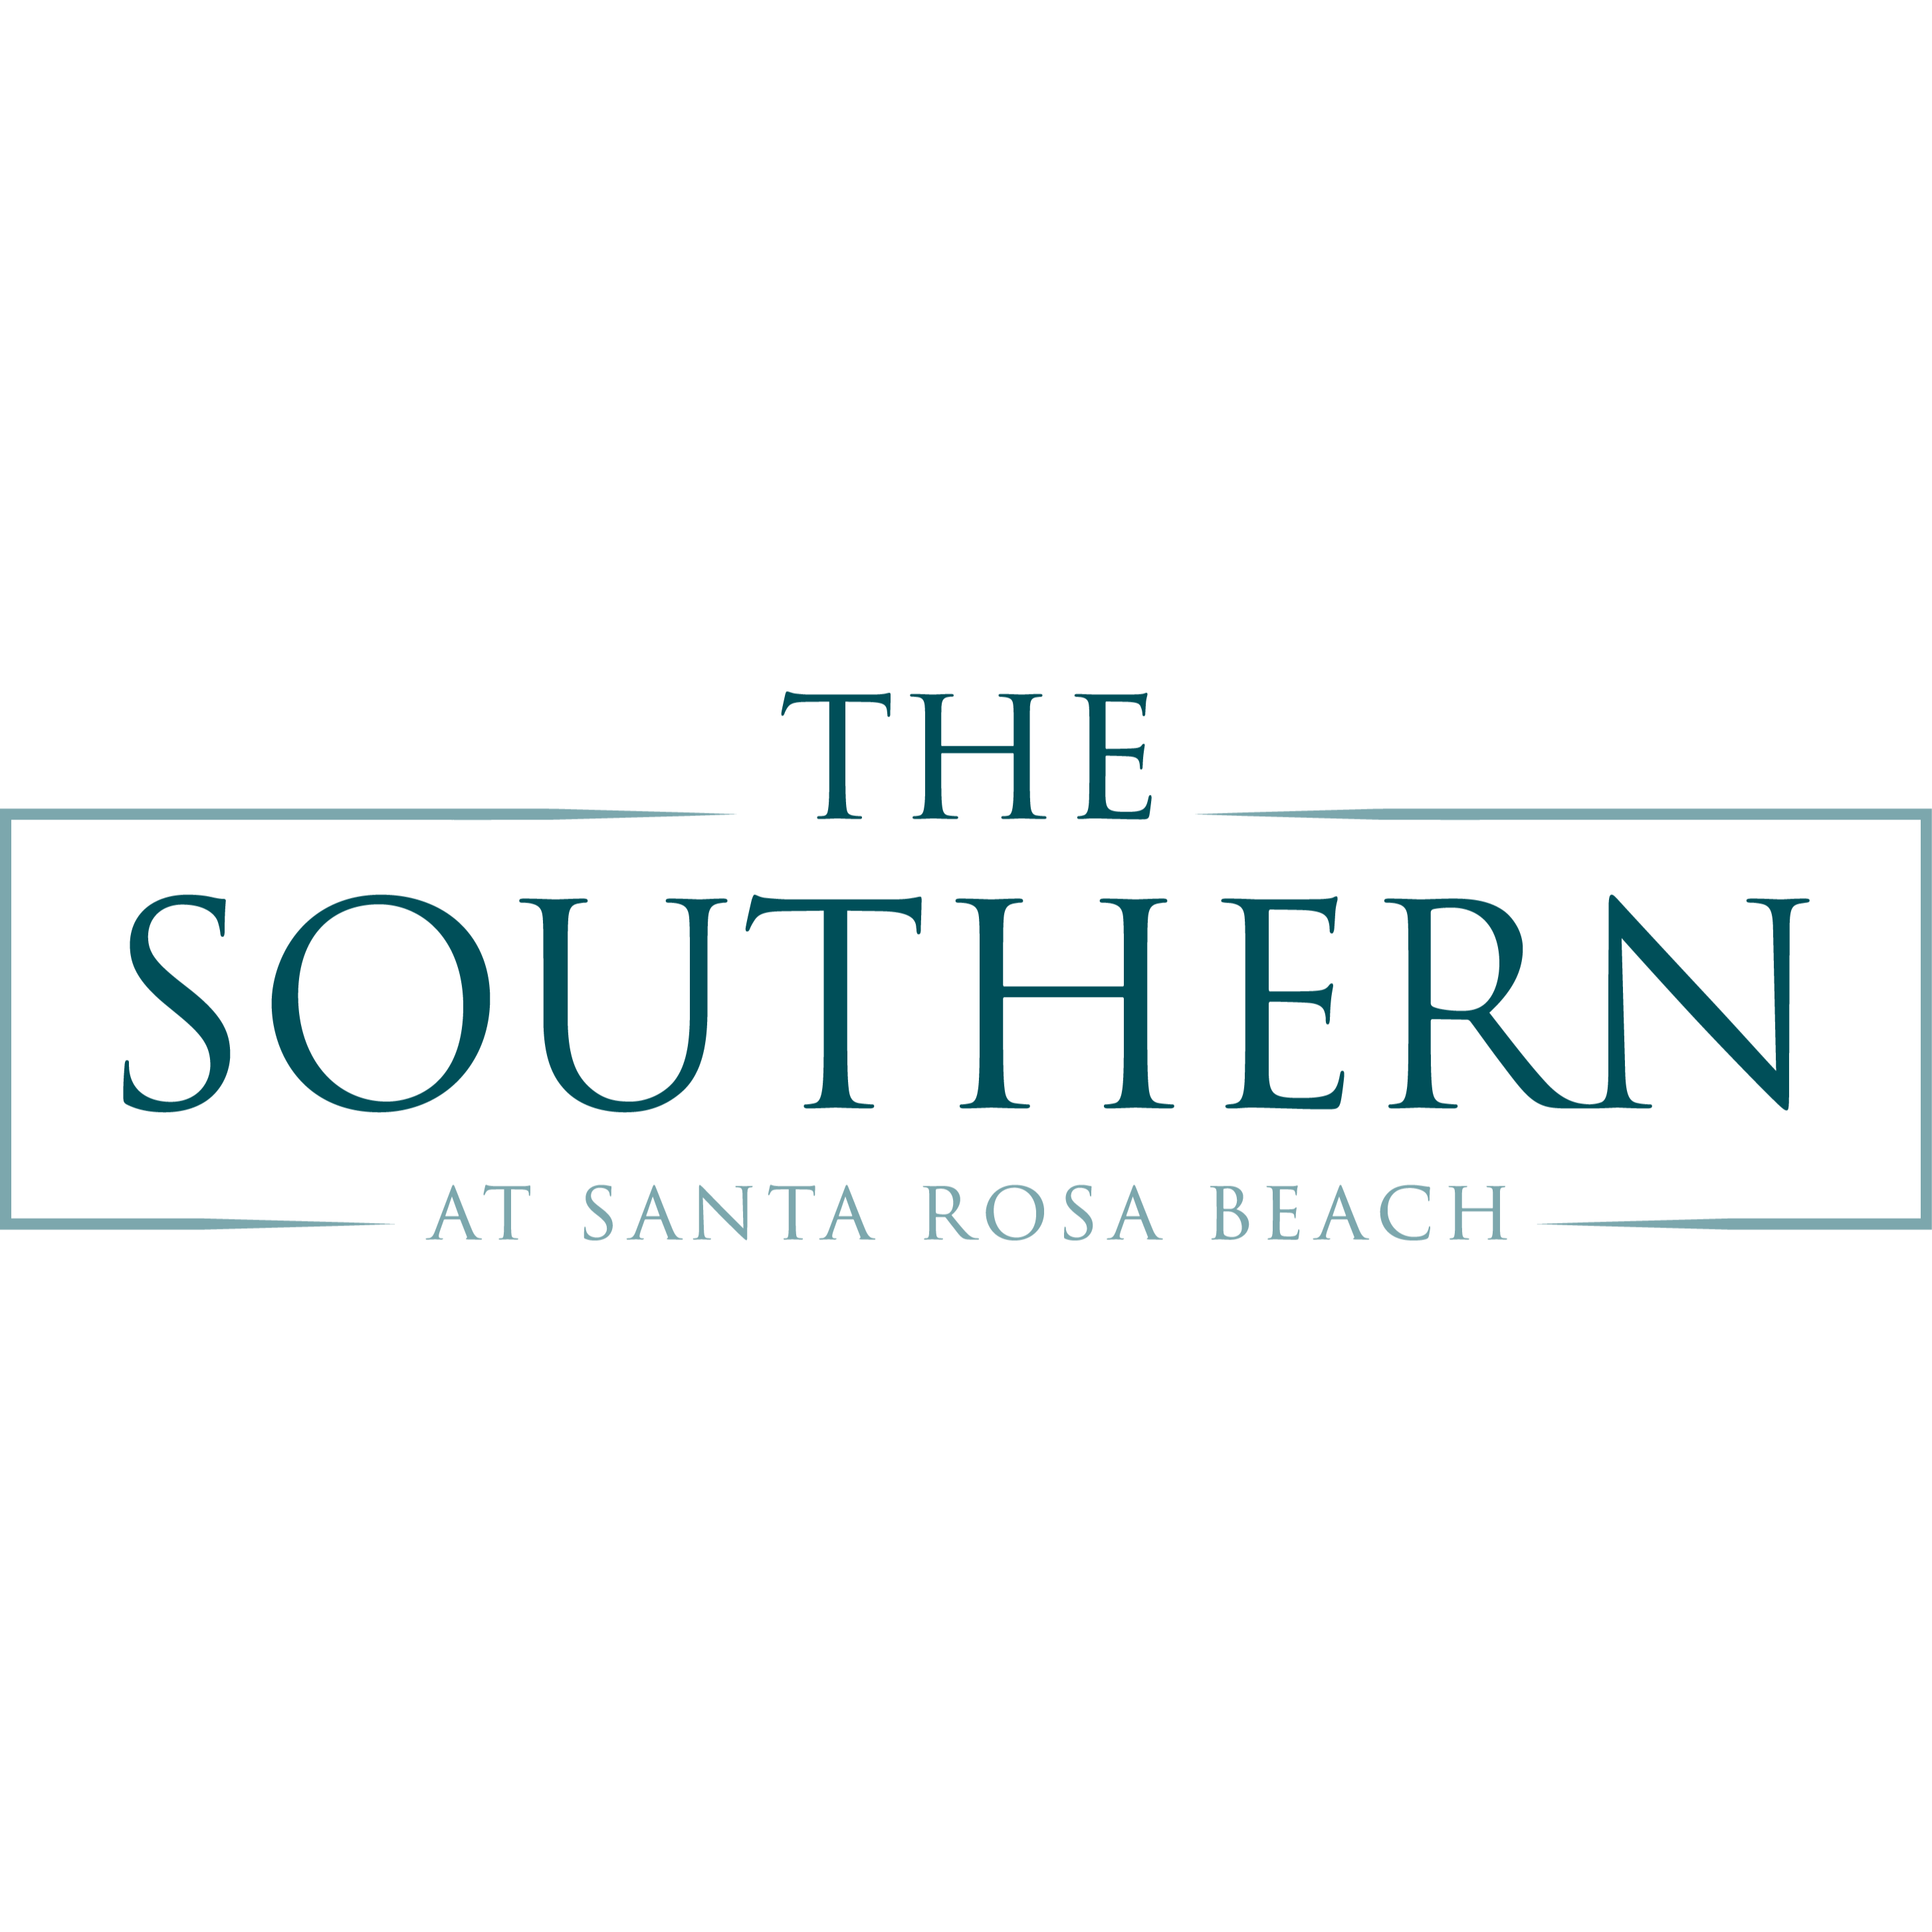 The Southern at Santa Rosa Beach